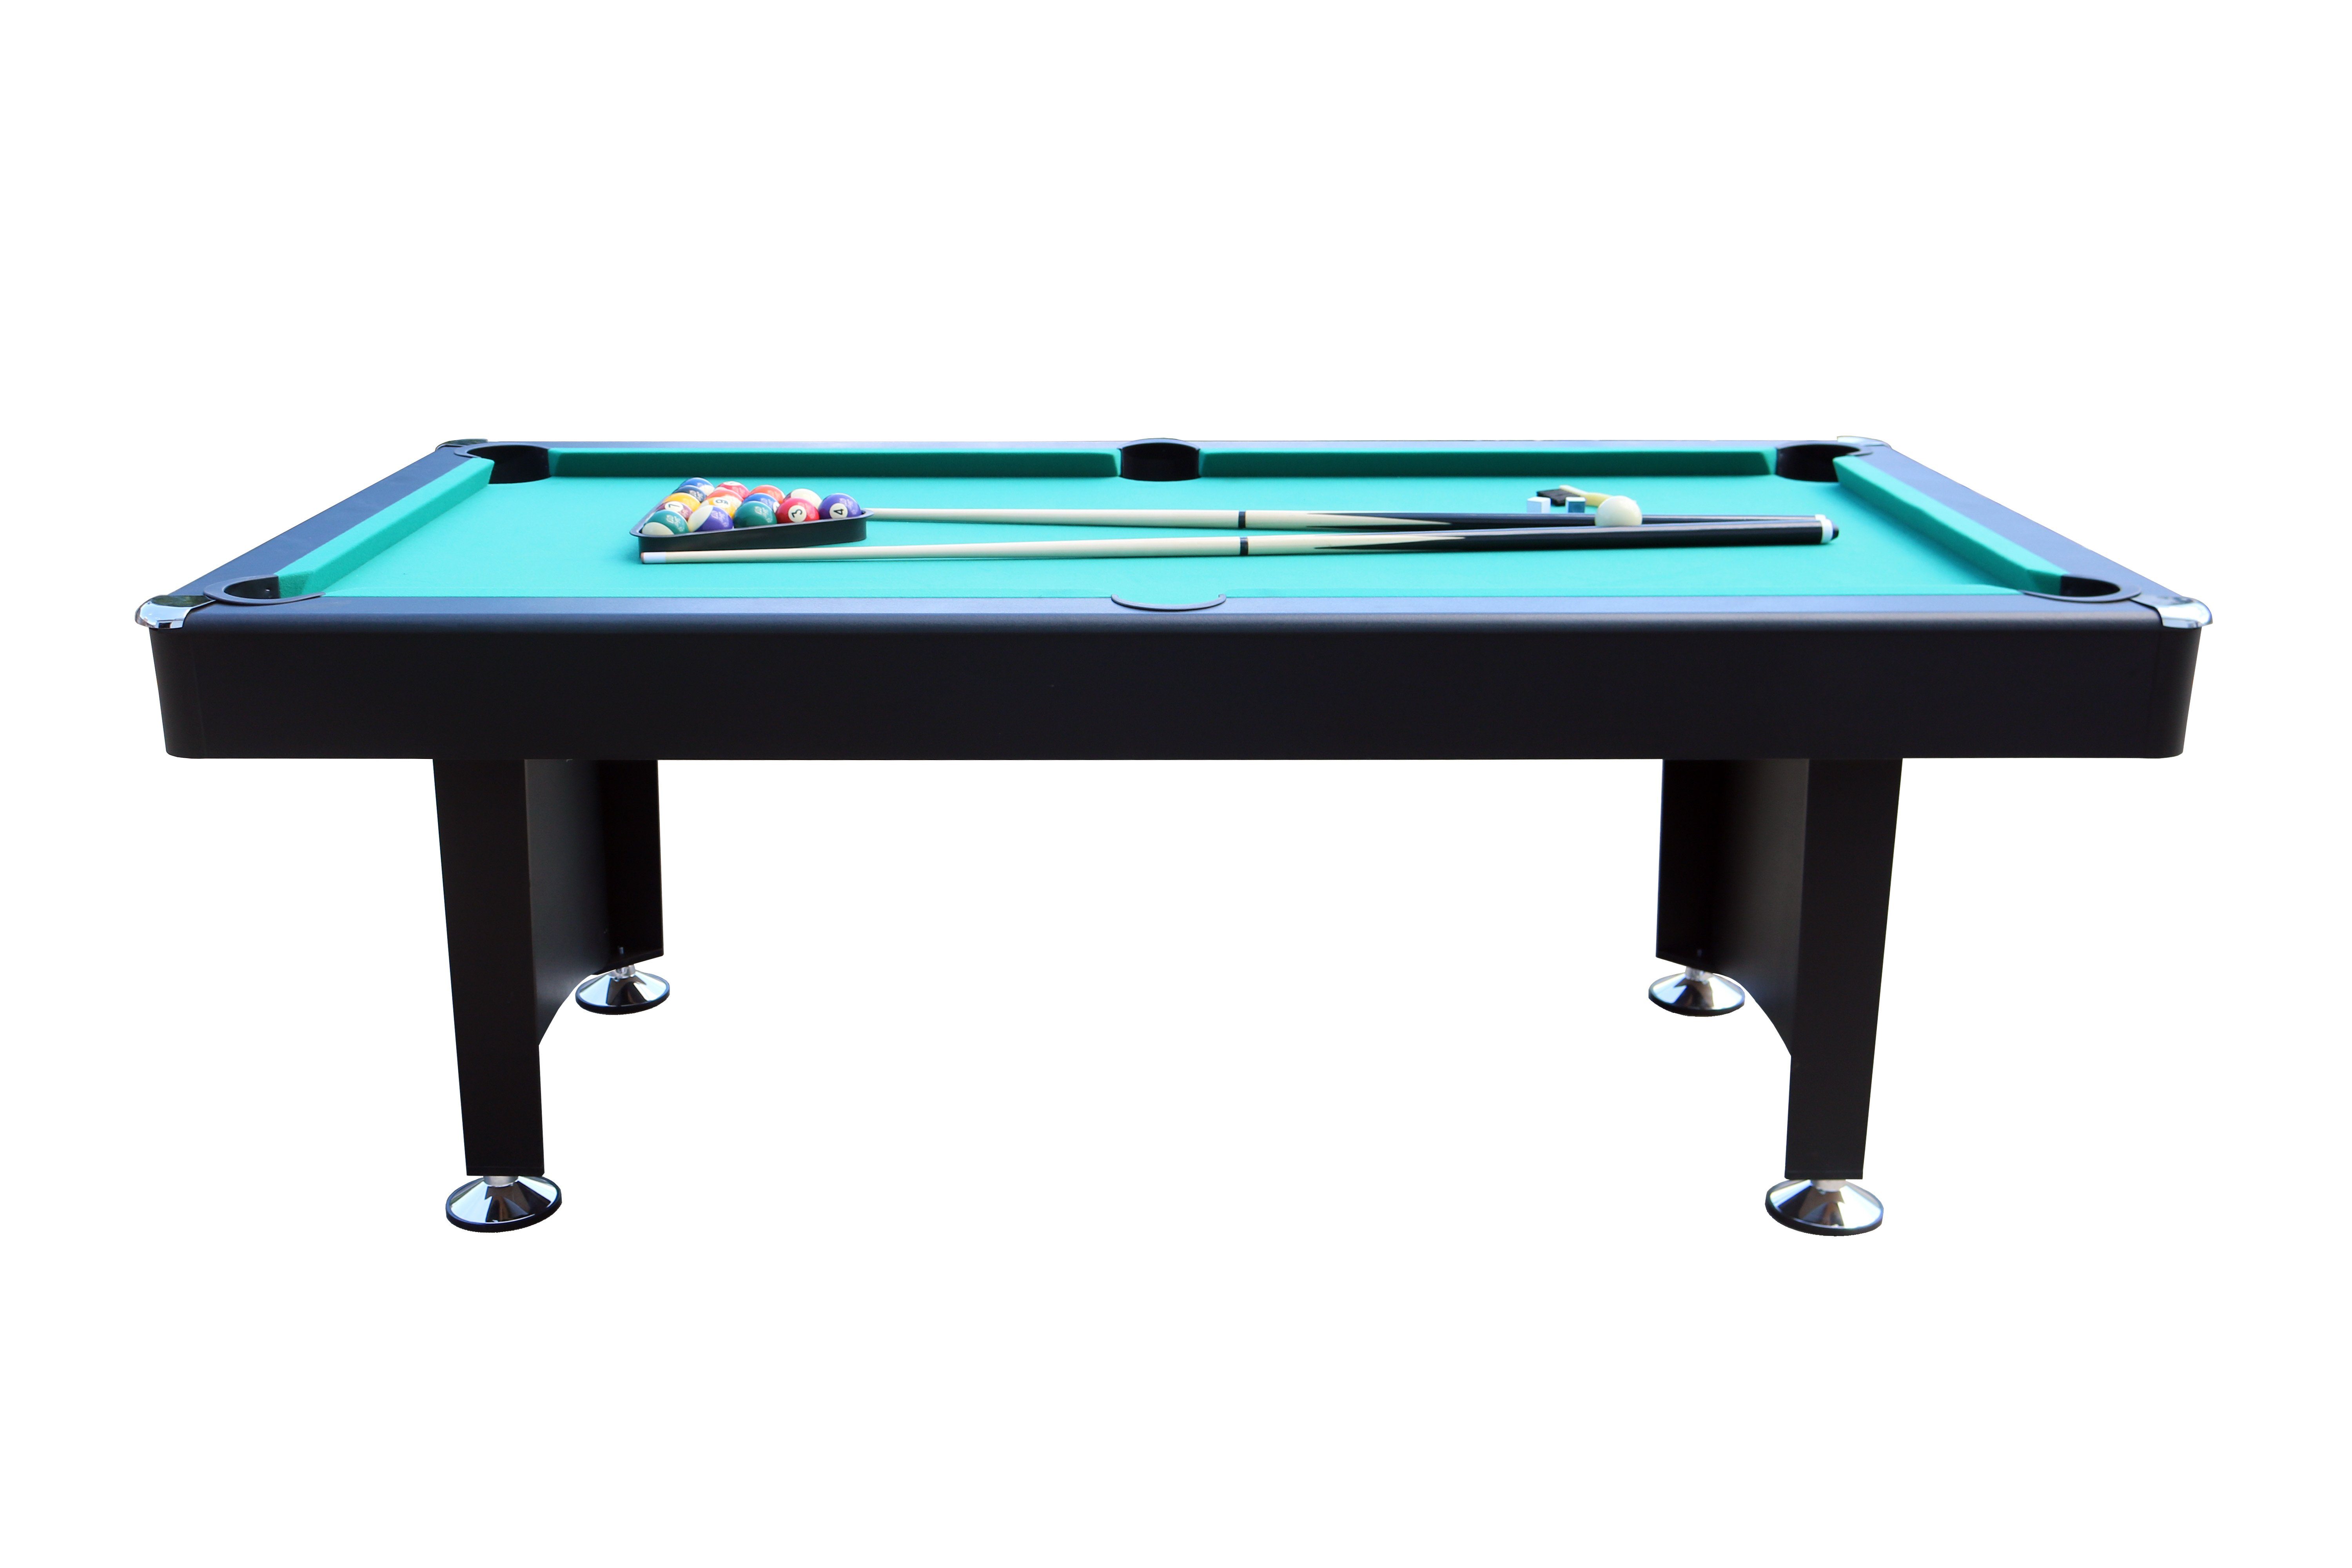 L.A. Sports (Komplett Tischbillard 7ft Pool-Billard Premium mit groß, Set), schwarz Zubehör Billardtisch grünes Spieltuch